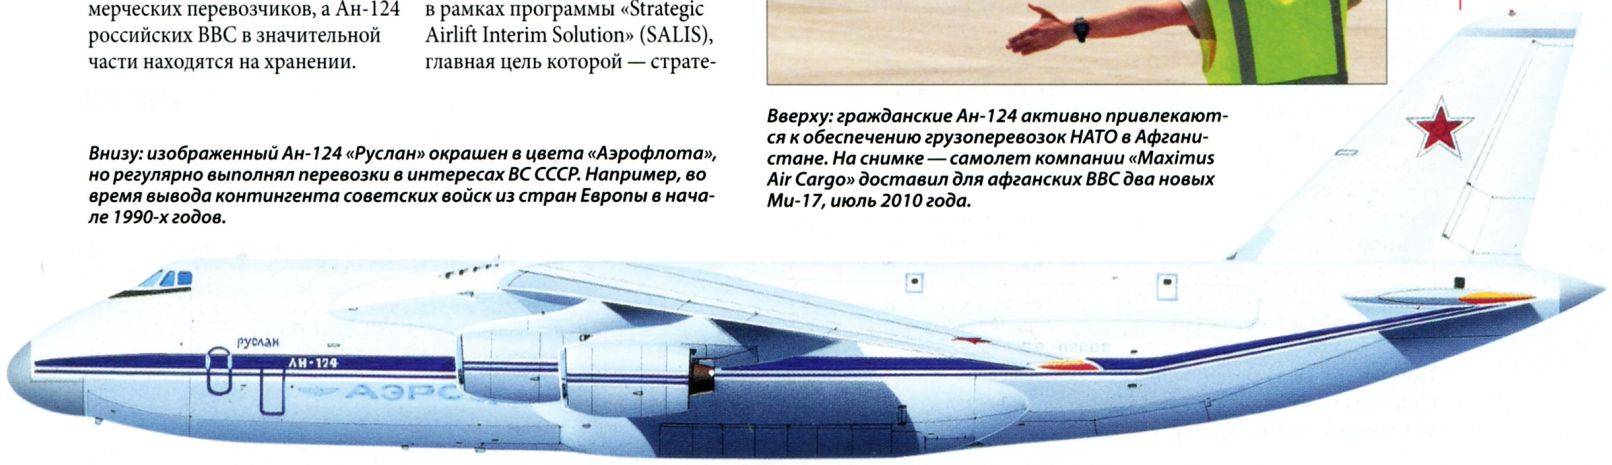 Тяжелый военно-транспортный самолет ан-124 «руслан» (украина — россия). фото и описание